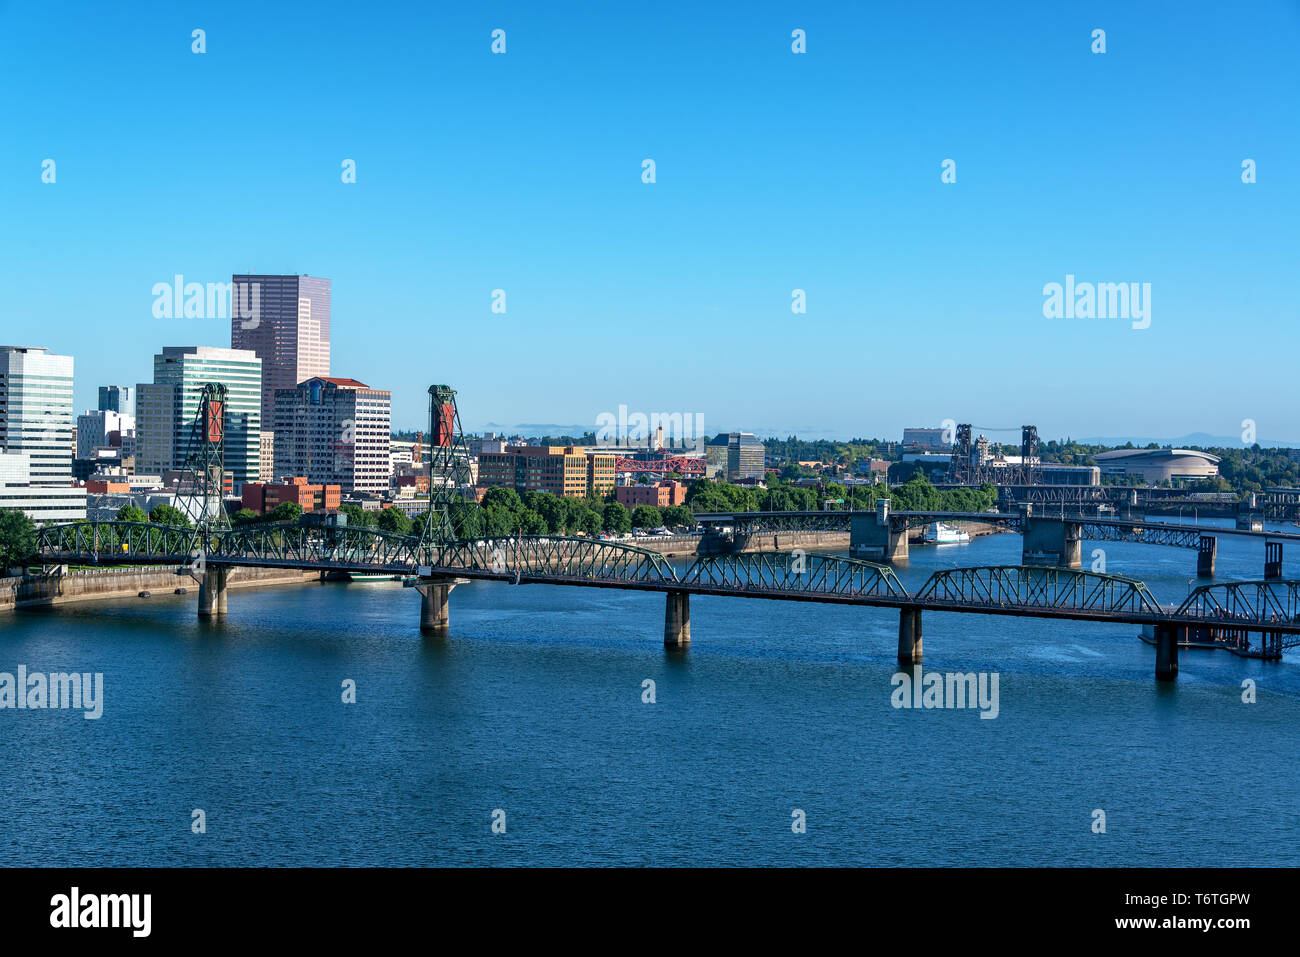 Vue de la rivière Willamette et Hawthorne Bridge avec un magnifique paysage urbain de Portland, Oregon Banque D'Images